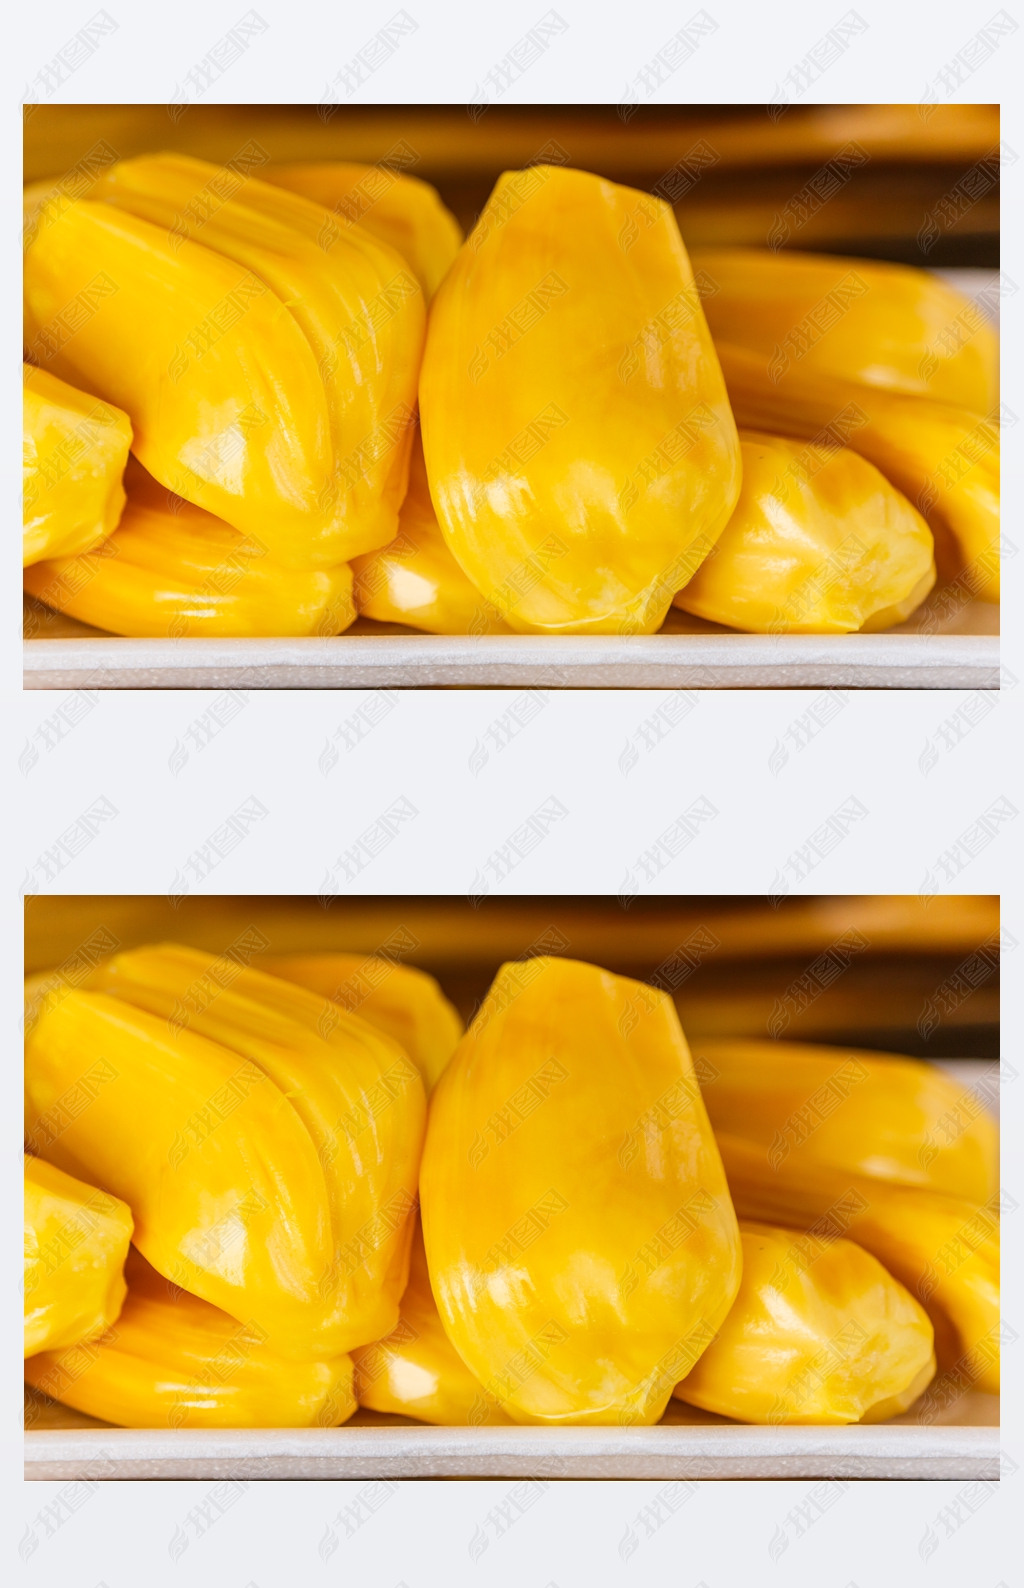 Piece of yellow jackfruit meat balls.closeup shot. (jackfruit) 